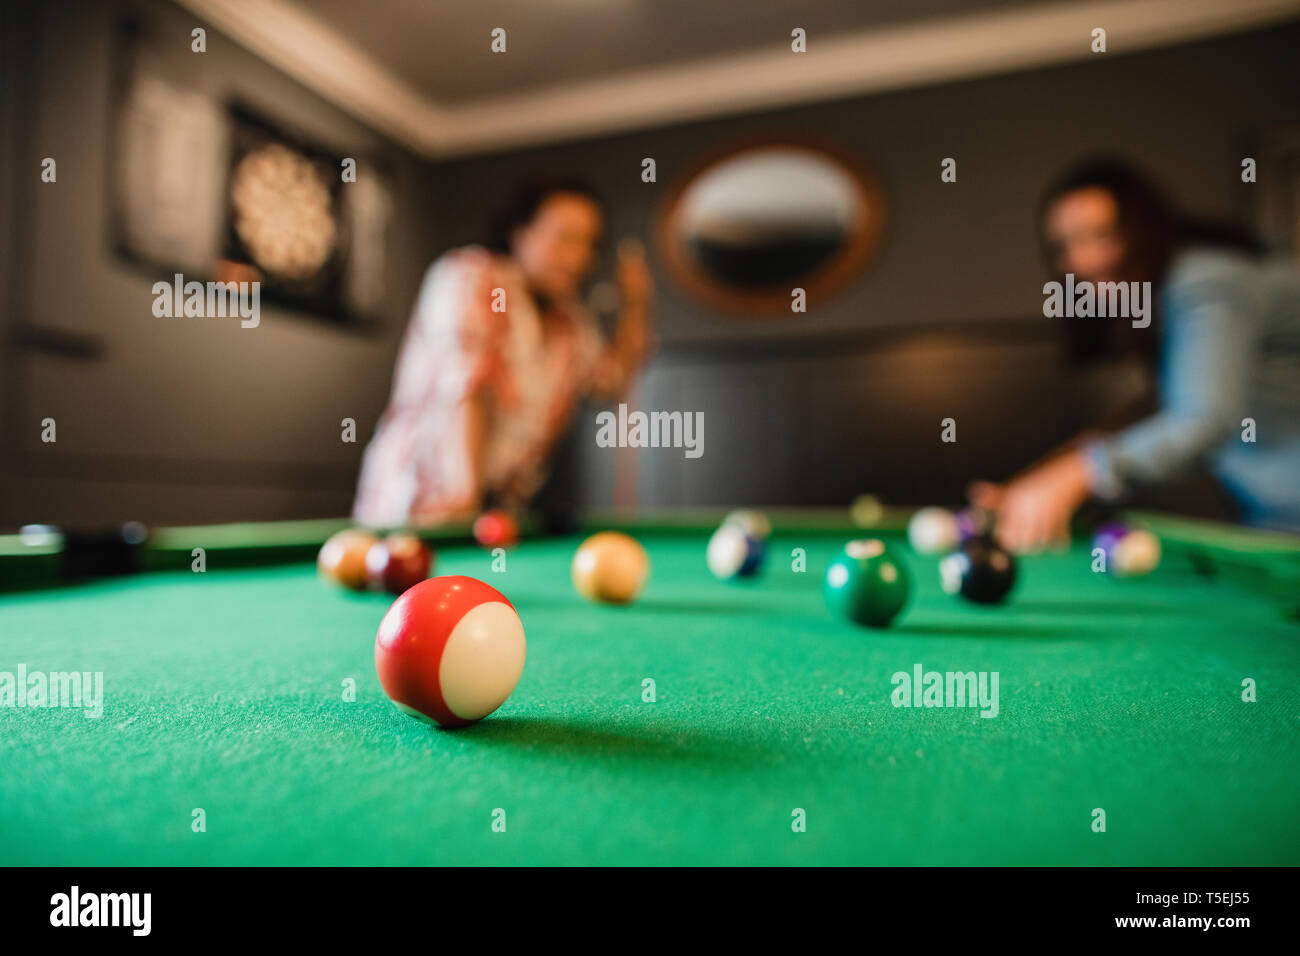 Fokus auf Vordergrund einer rot gestreiften Pool Ball. Im Hintergrund gibt es zwei Mitte der erwachsenen Freunde spielen eine Partie Pool, ein Spielzimmer im Haus. Stockfoto